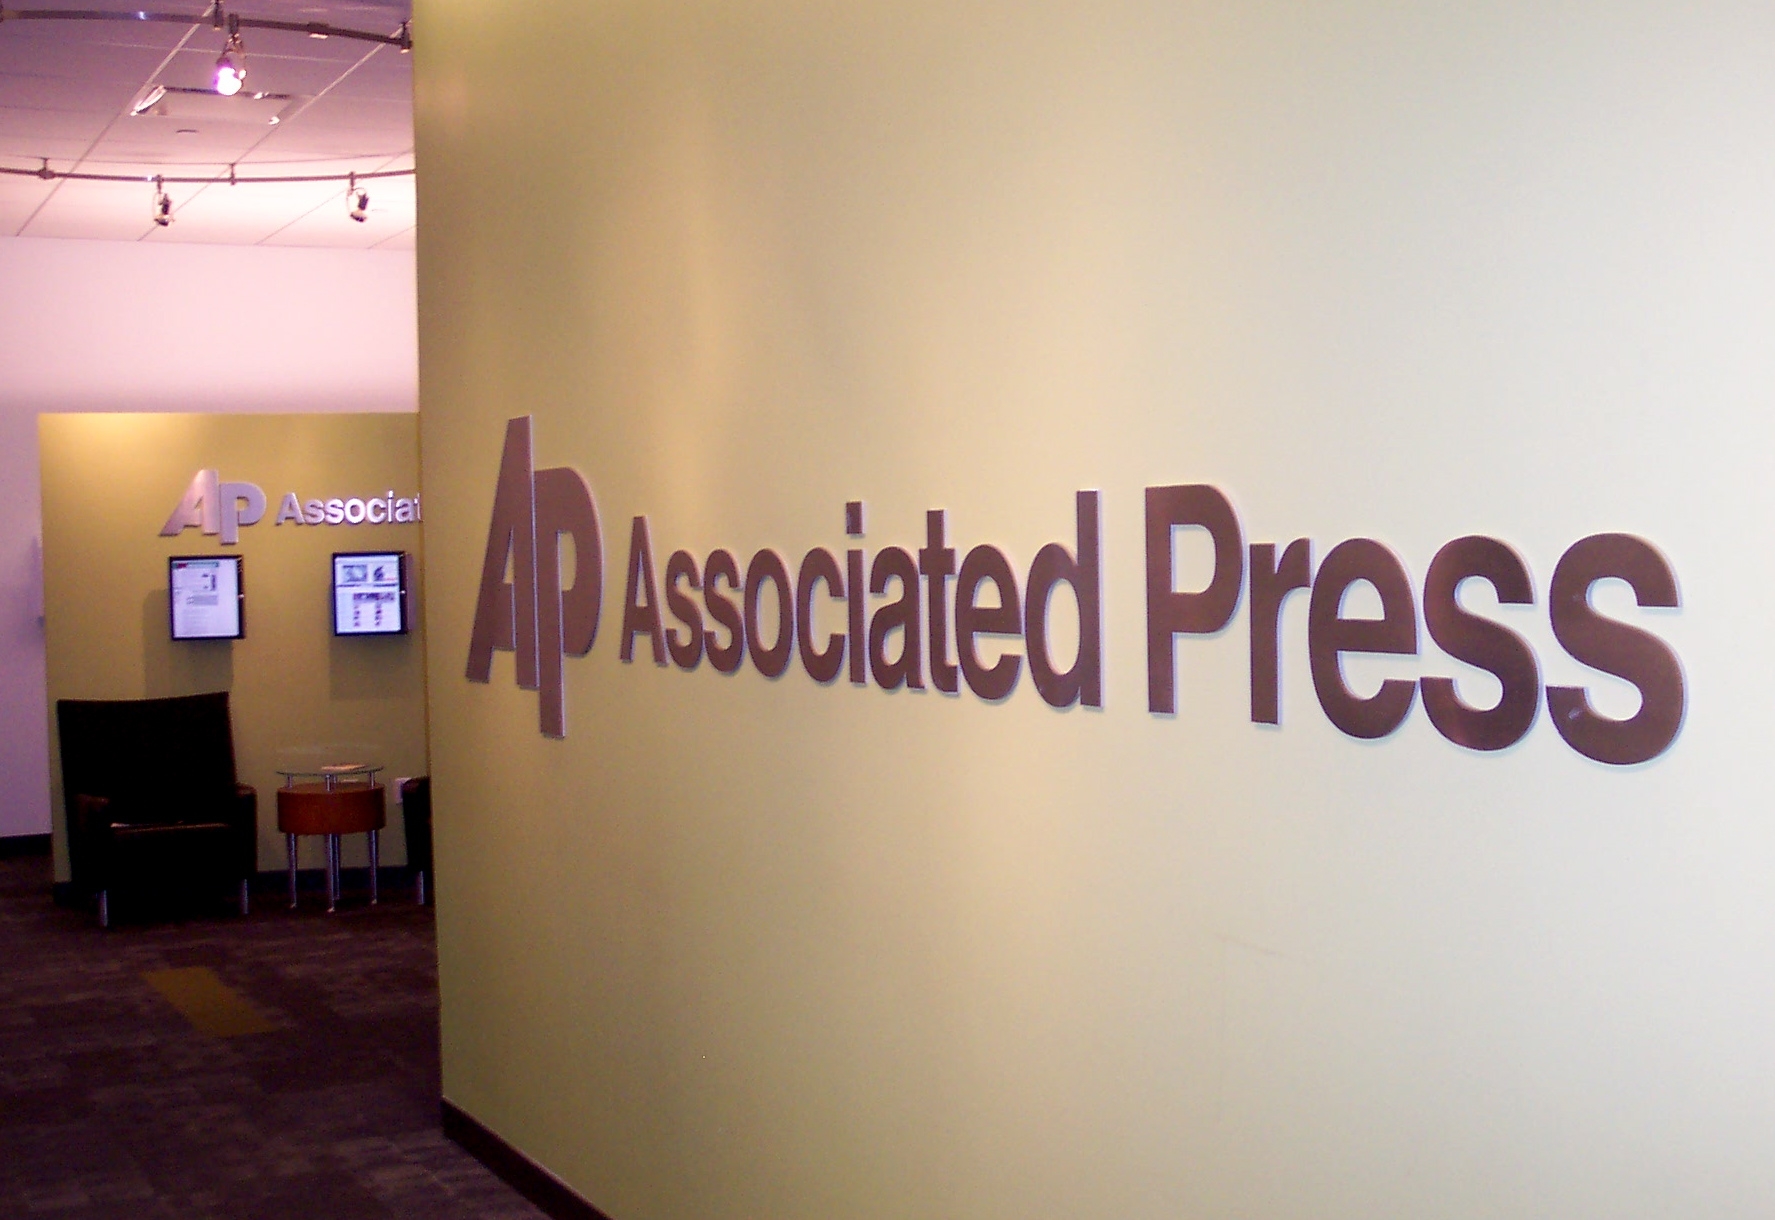 Специальный робот будет писать бизнес-новости для Associated Press